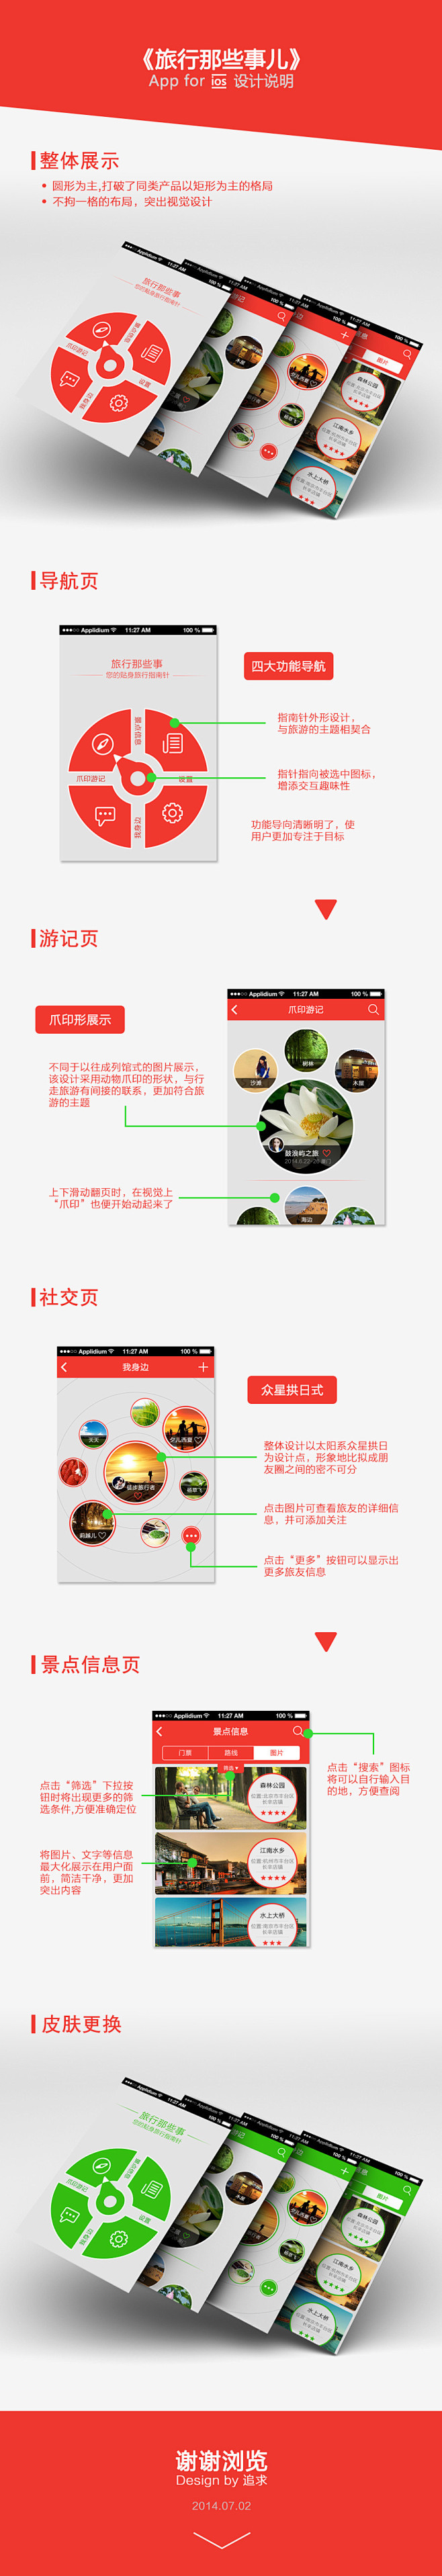 旅游app设计说明-UI中国-专业界面设...